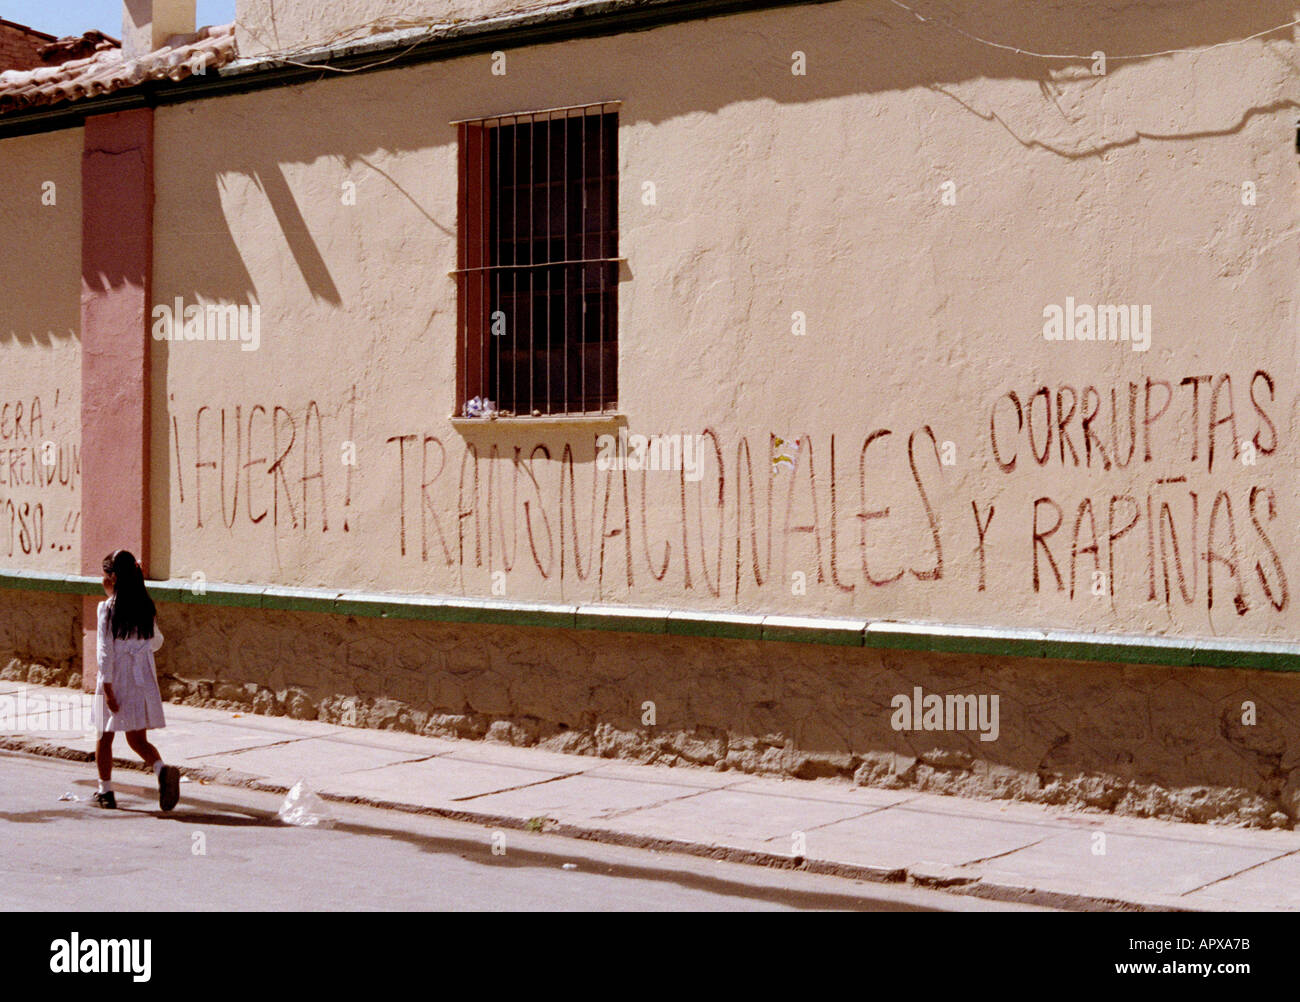 Kleinkind in Kleinstadt in Bolivien mit Fototapete Spruch raus multinationalen korrupte Räuber. Stockfoto